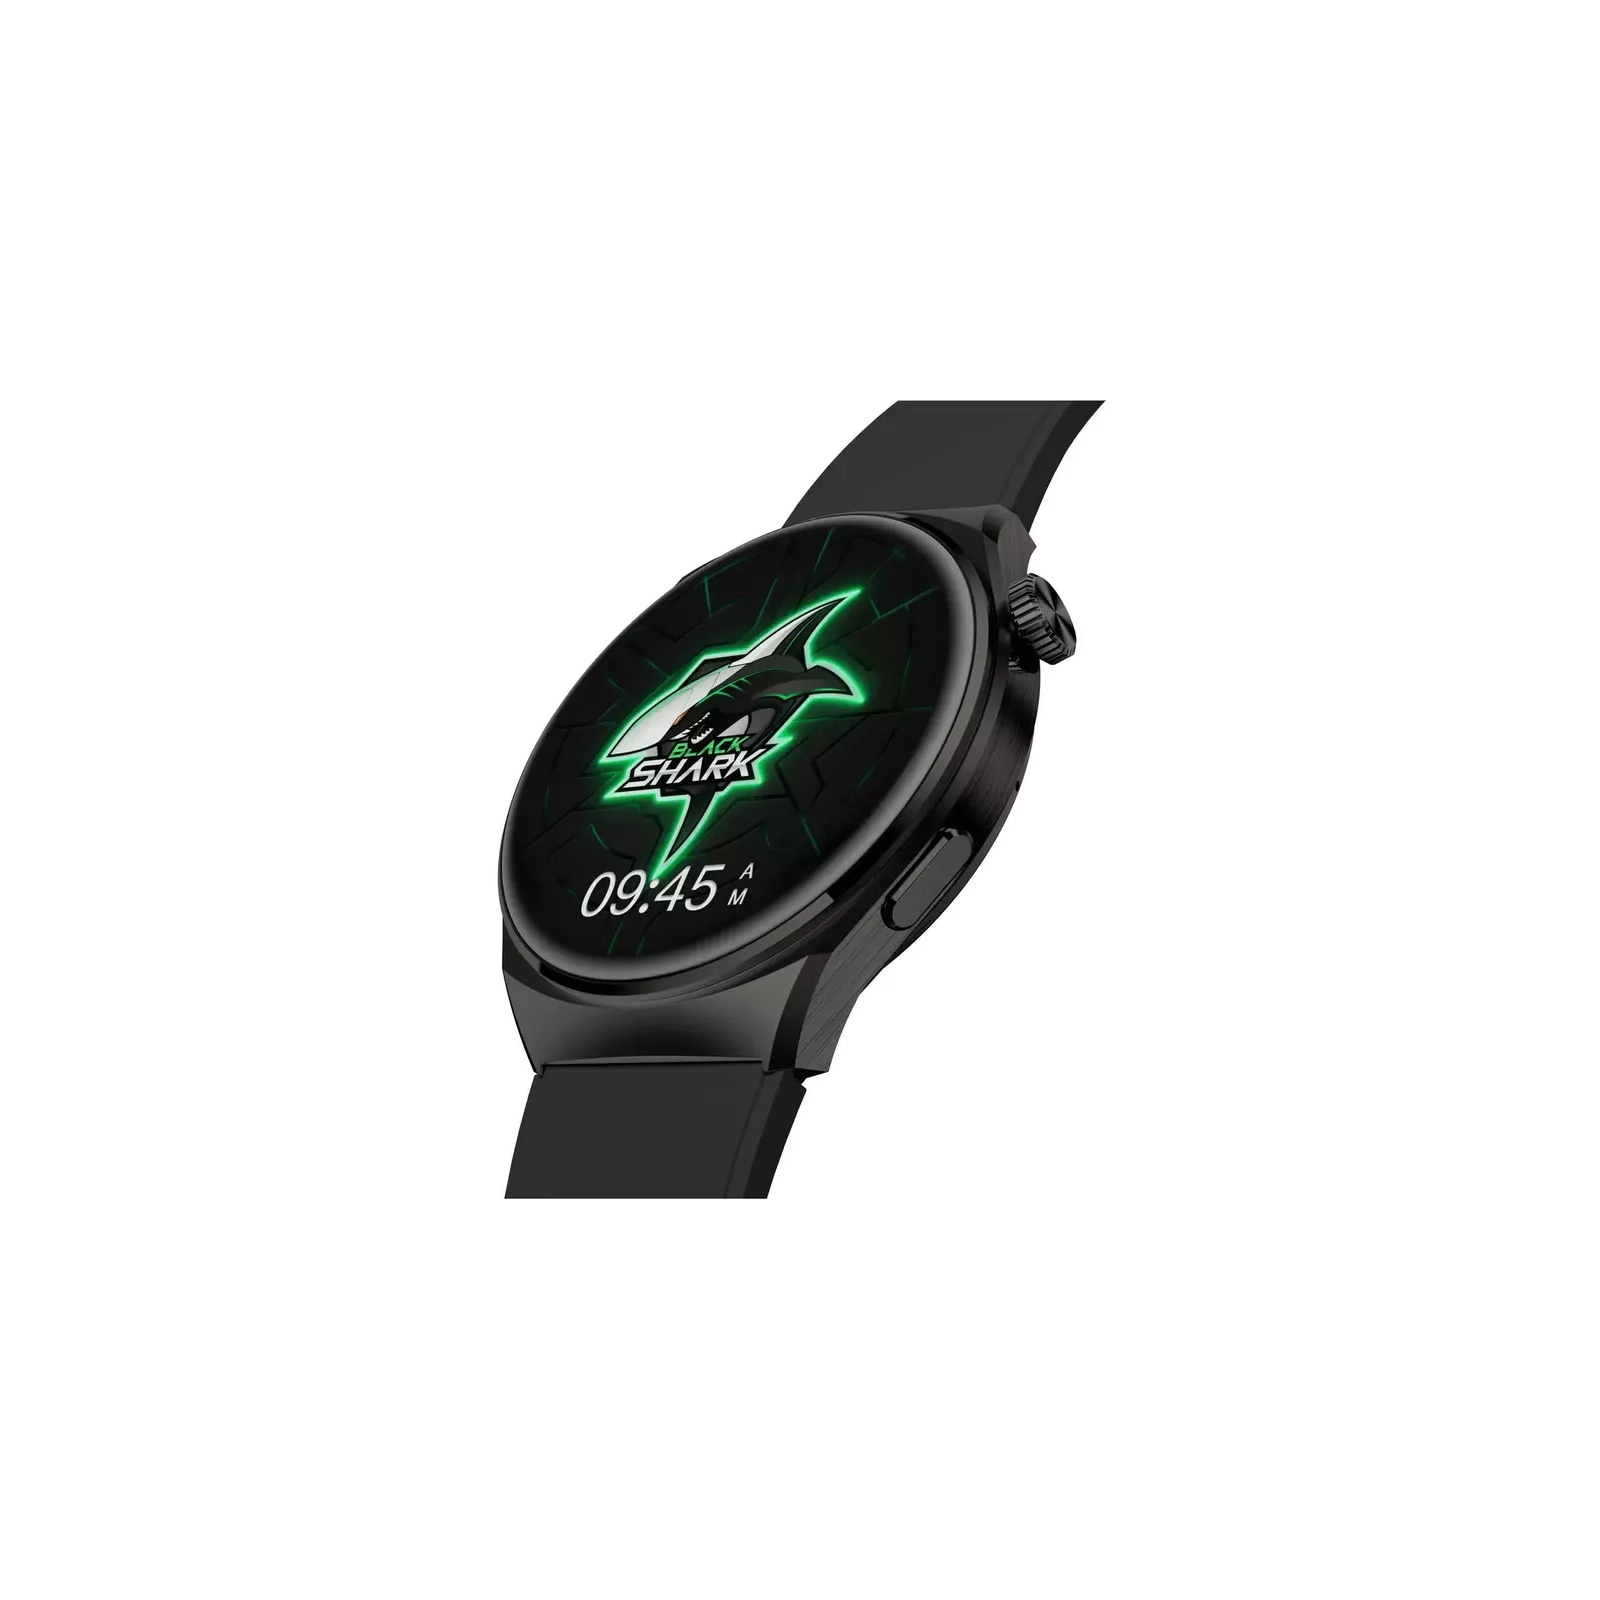 Смарт-часы Black Shark BS-S1 Black изображение 7